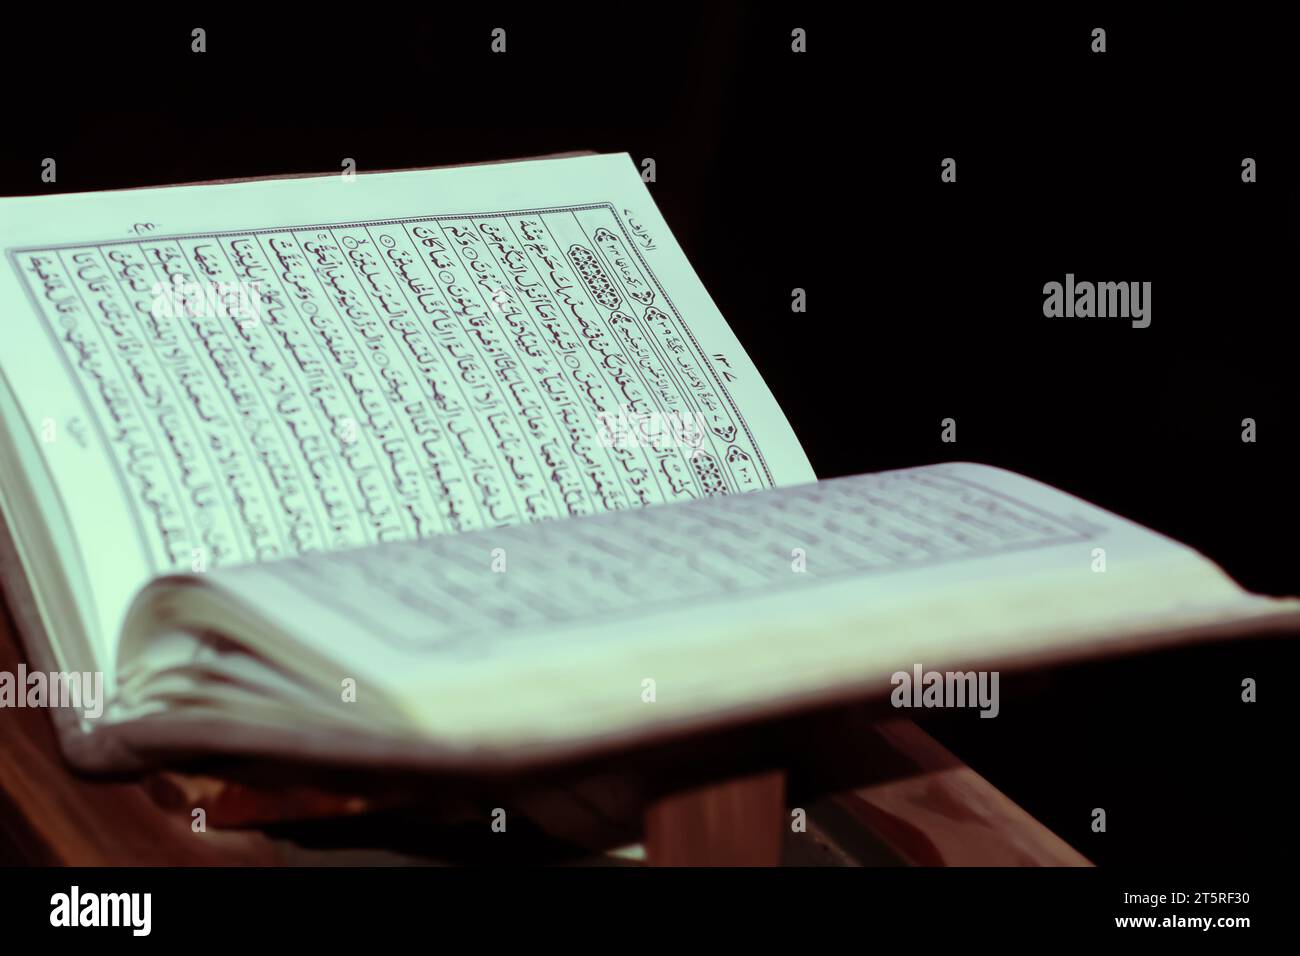 Quran open with black background verse al aaraaf Stock Photo